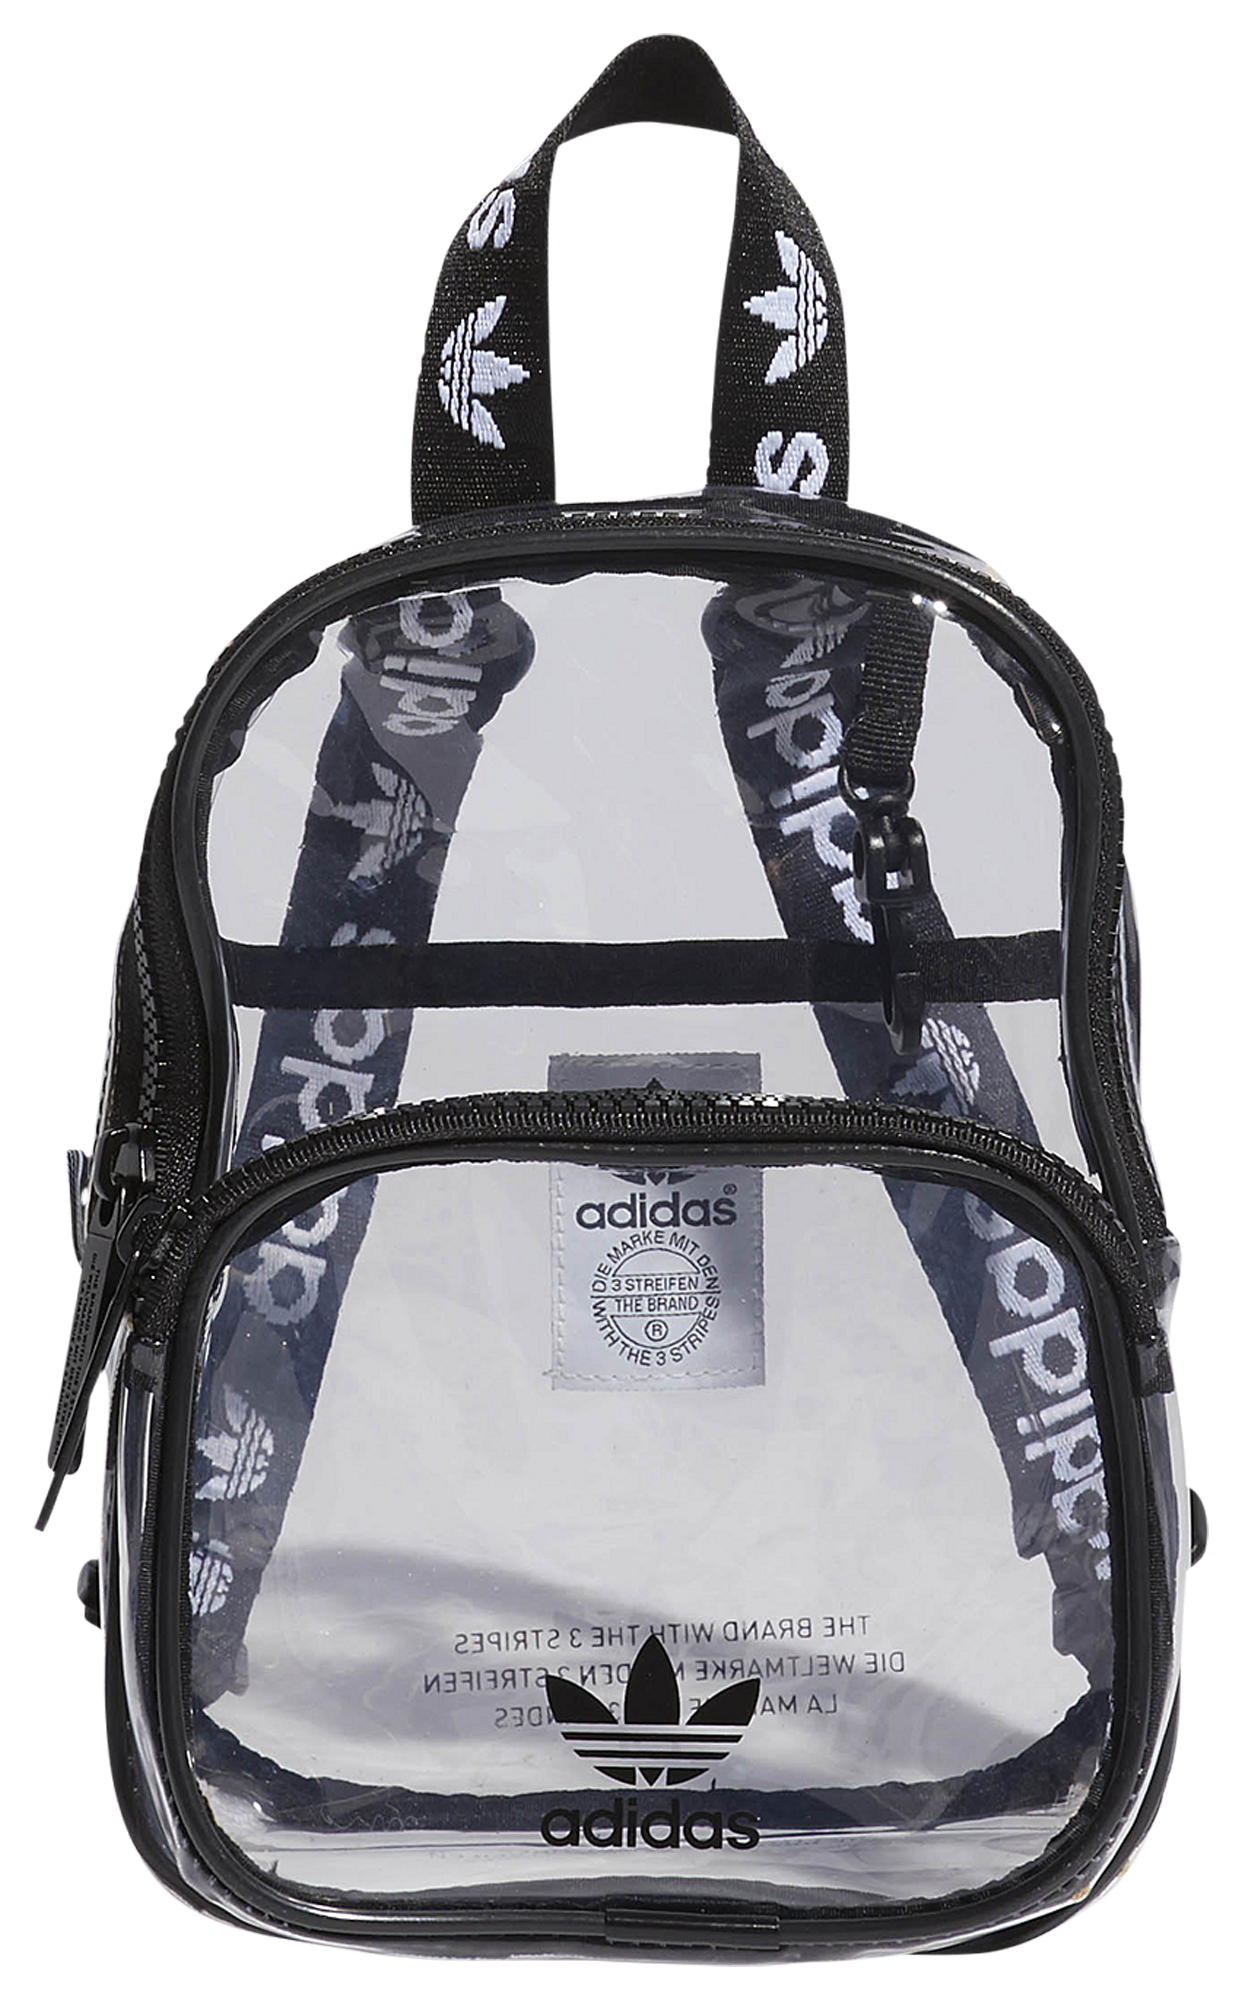 adidas mini backpack clear